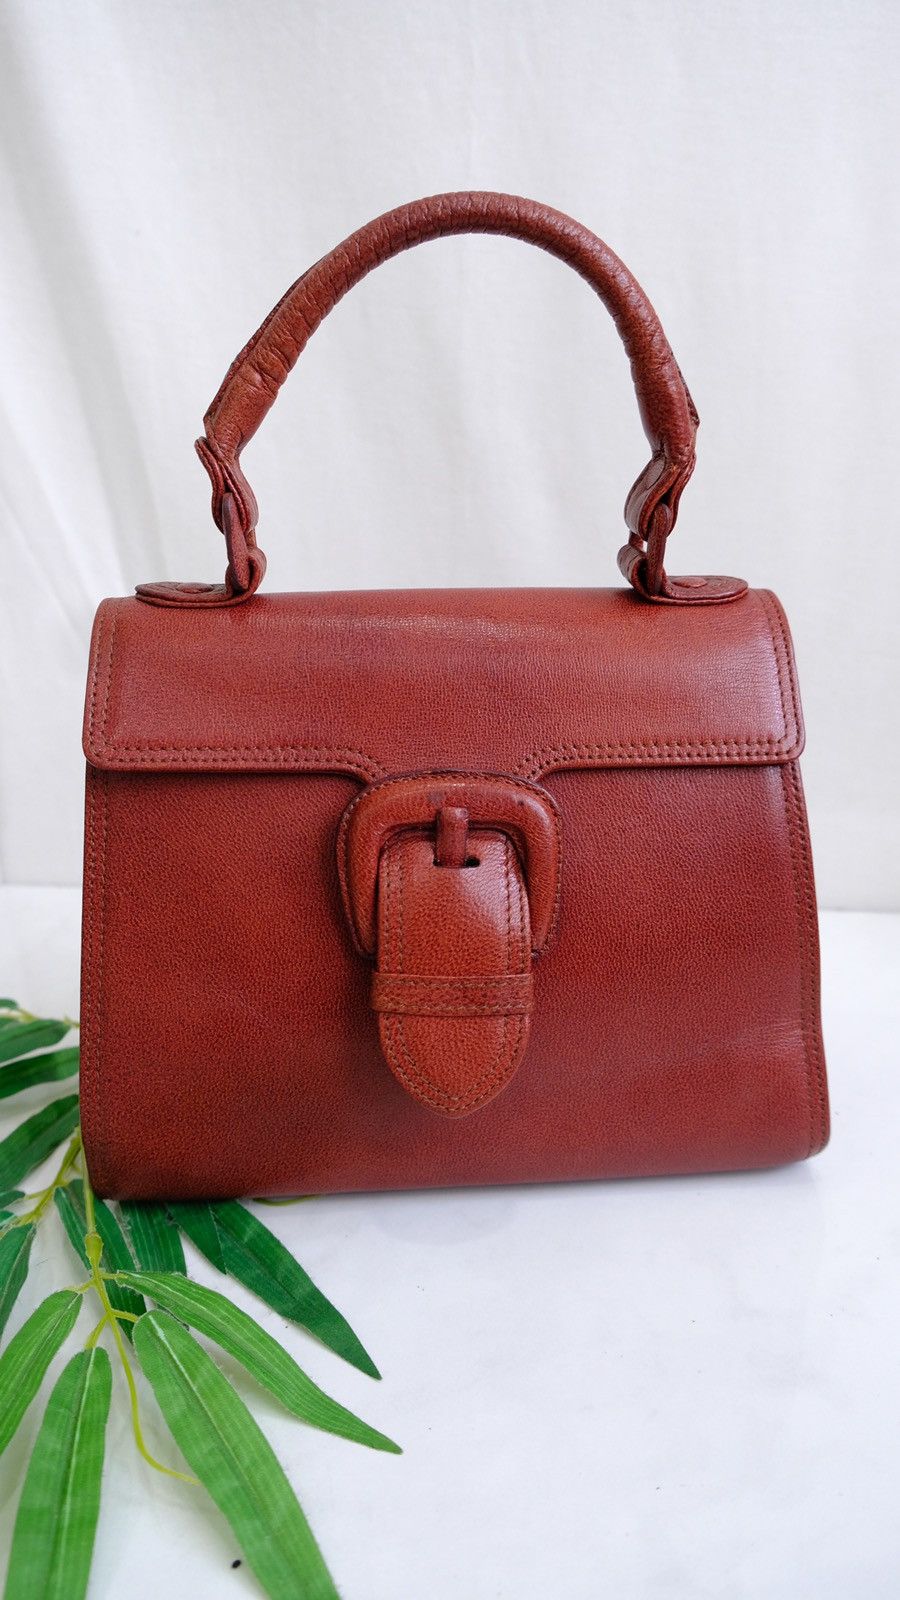 Vintage Jean Paul gualtire marron leather handbag - 1